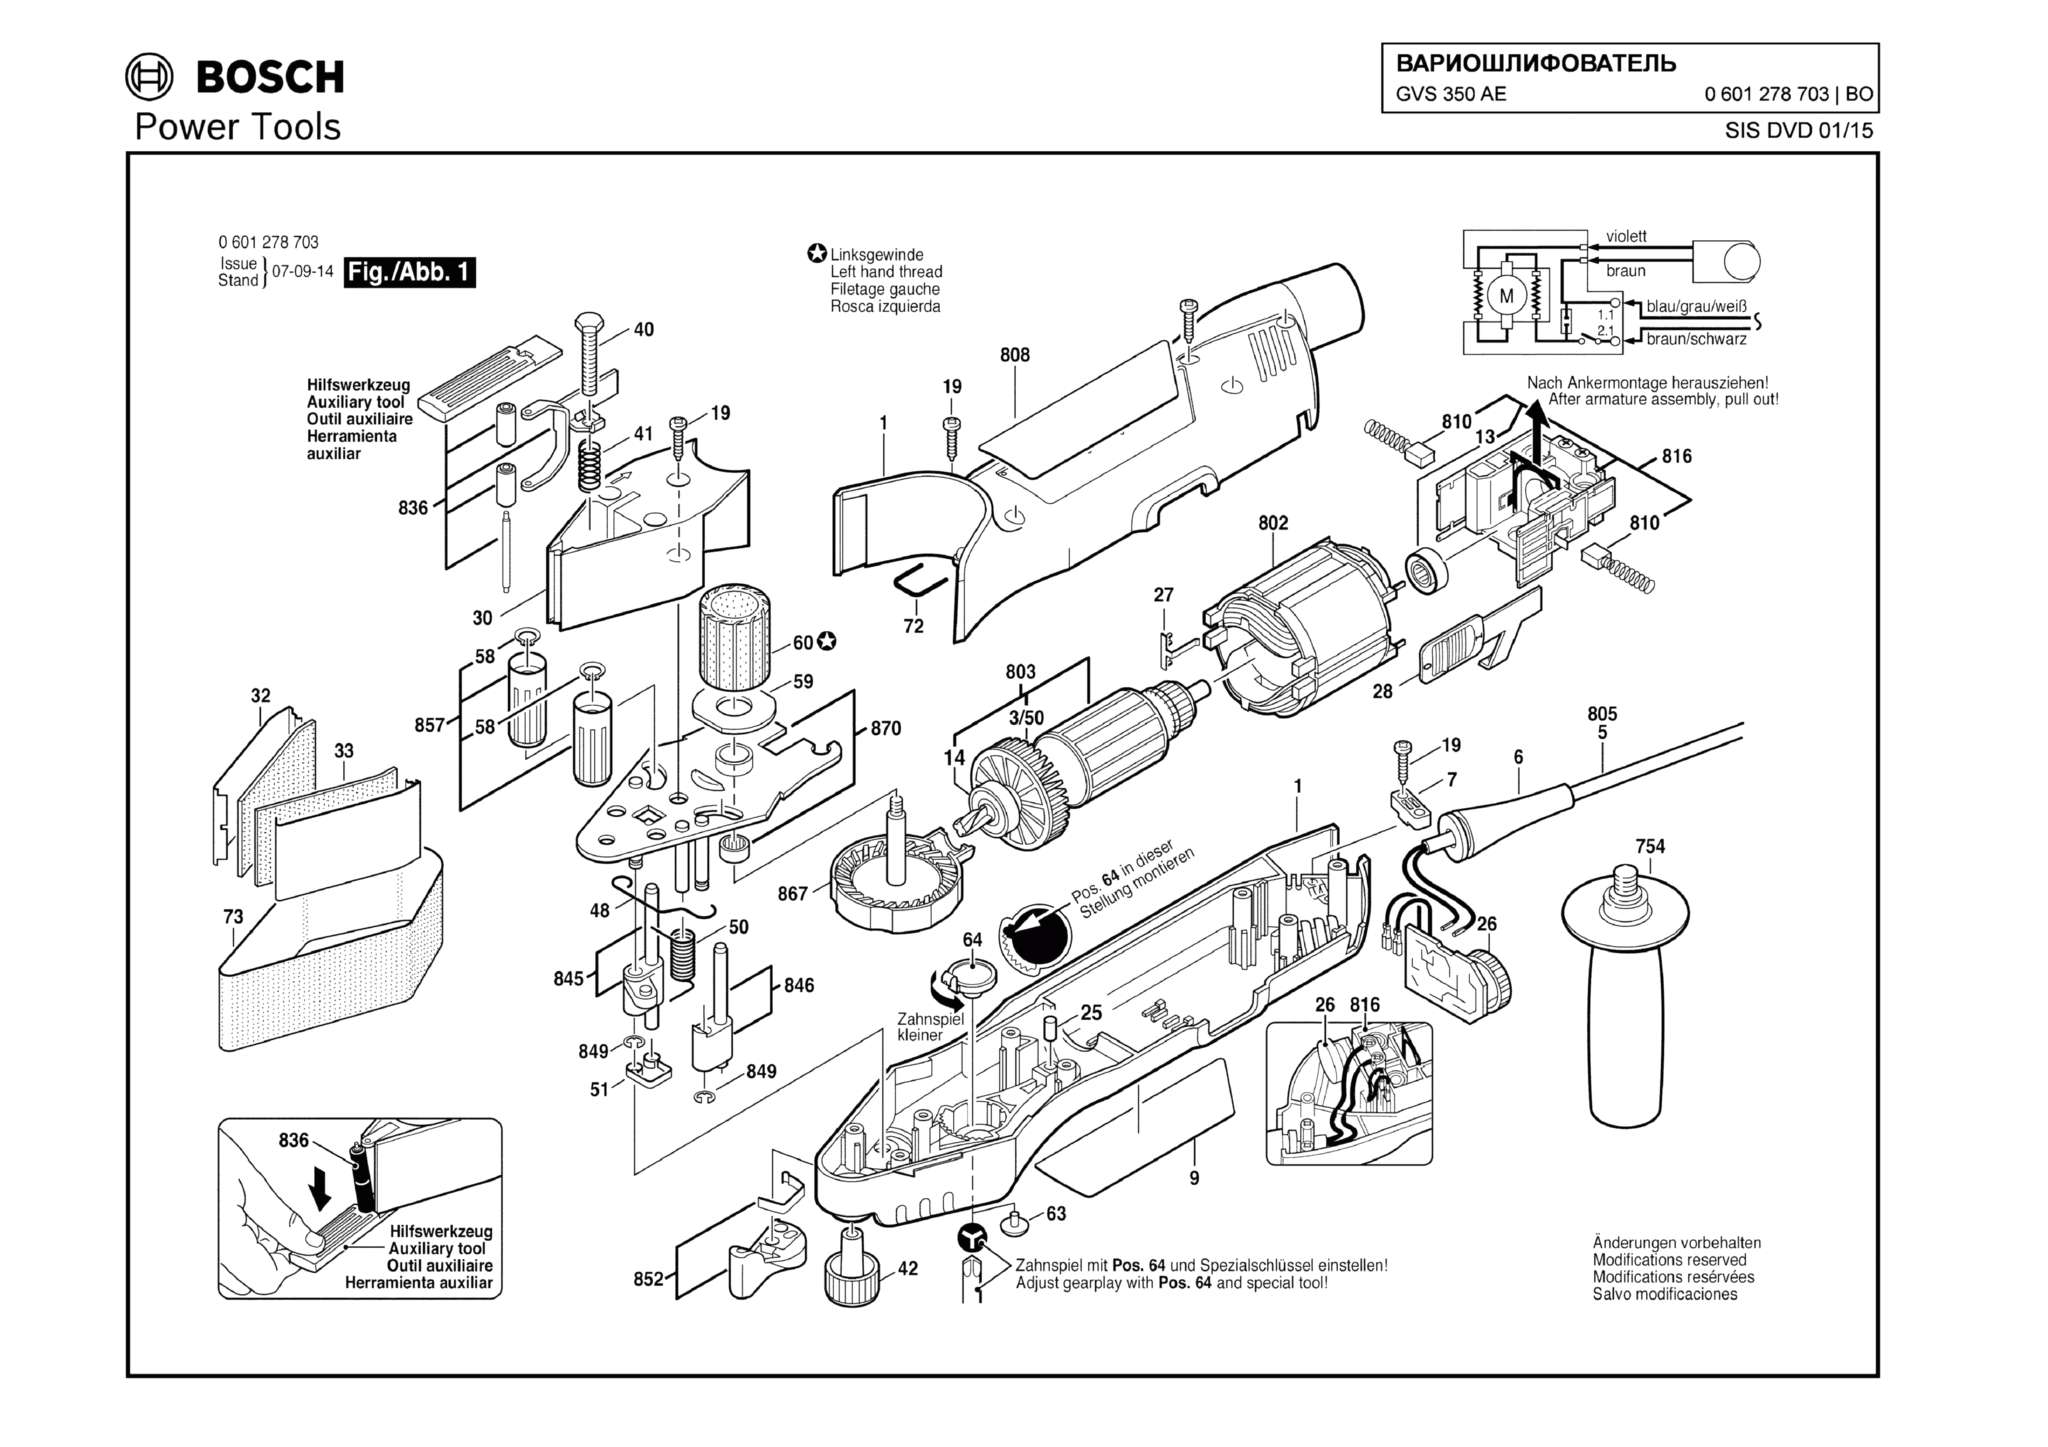 Запчасти, схема и деталировка Bosch GVS 350 AE (ТИП 0601278703)